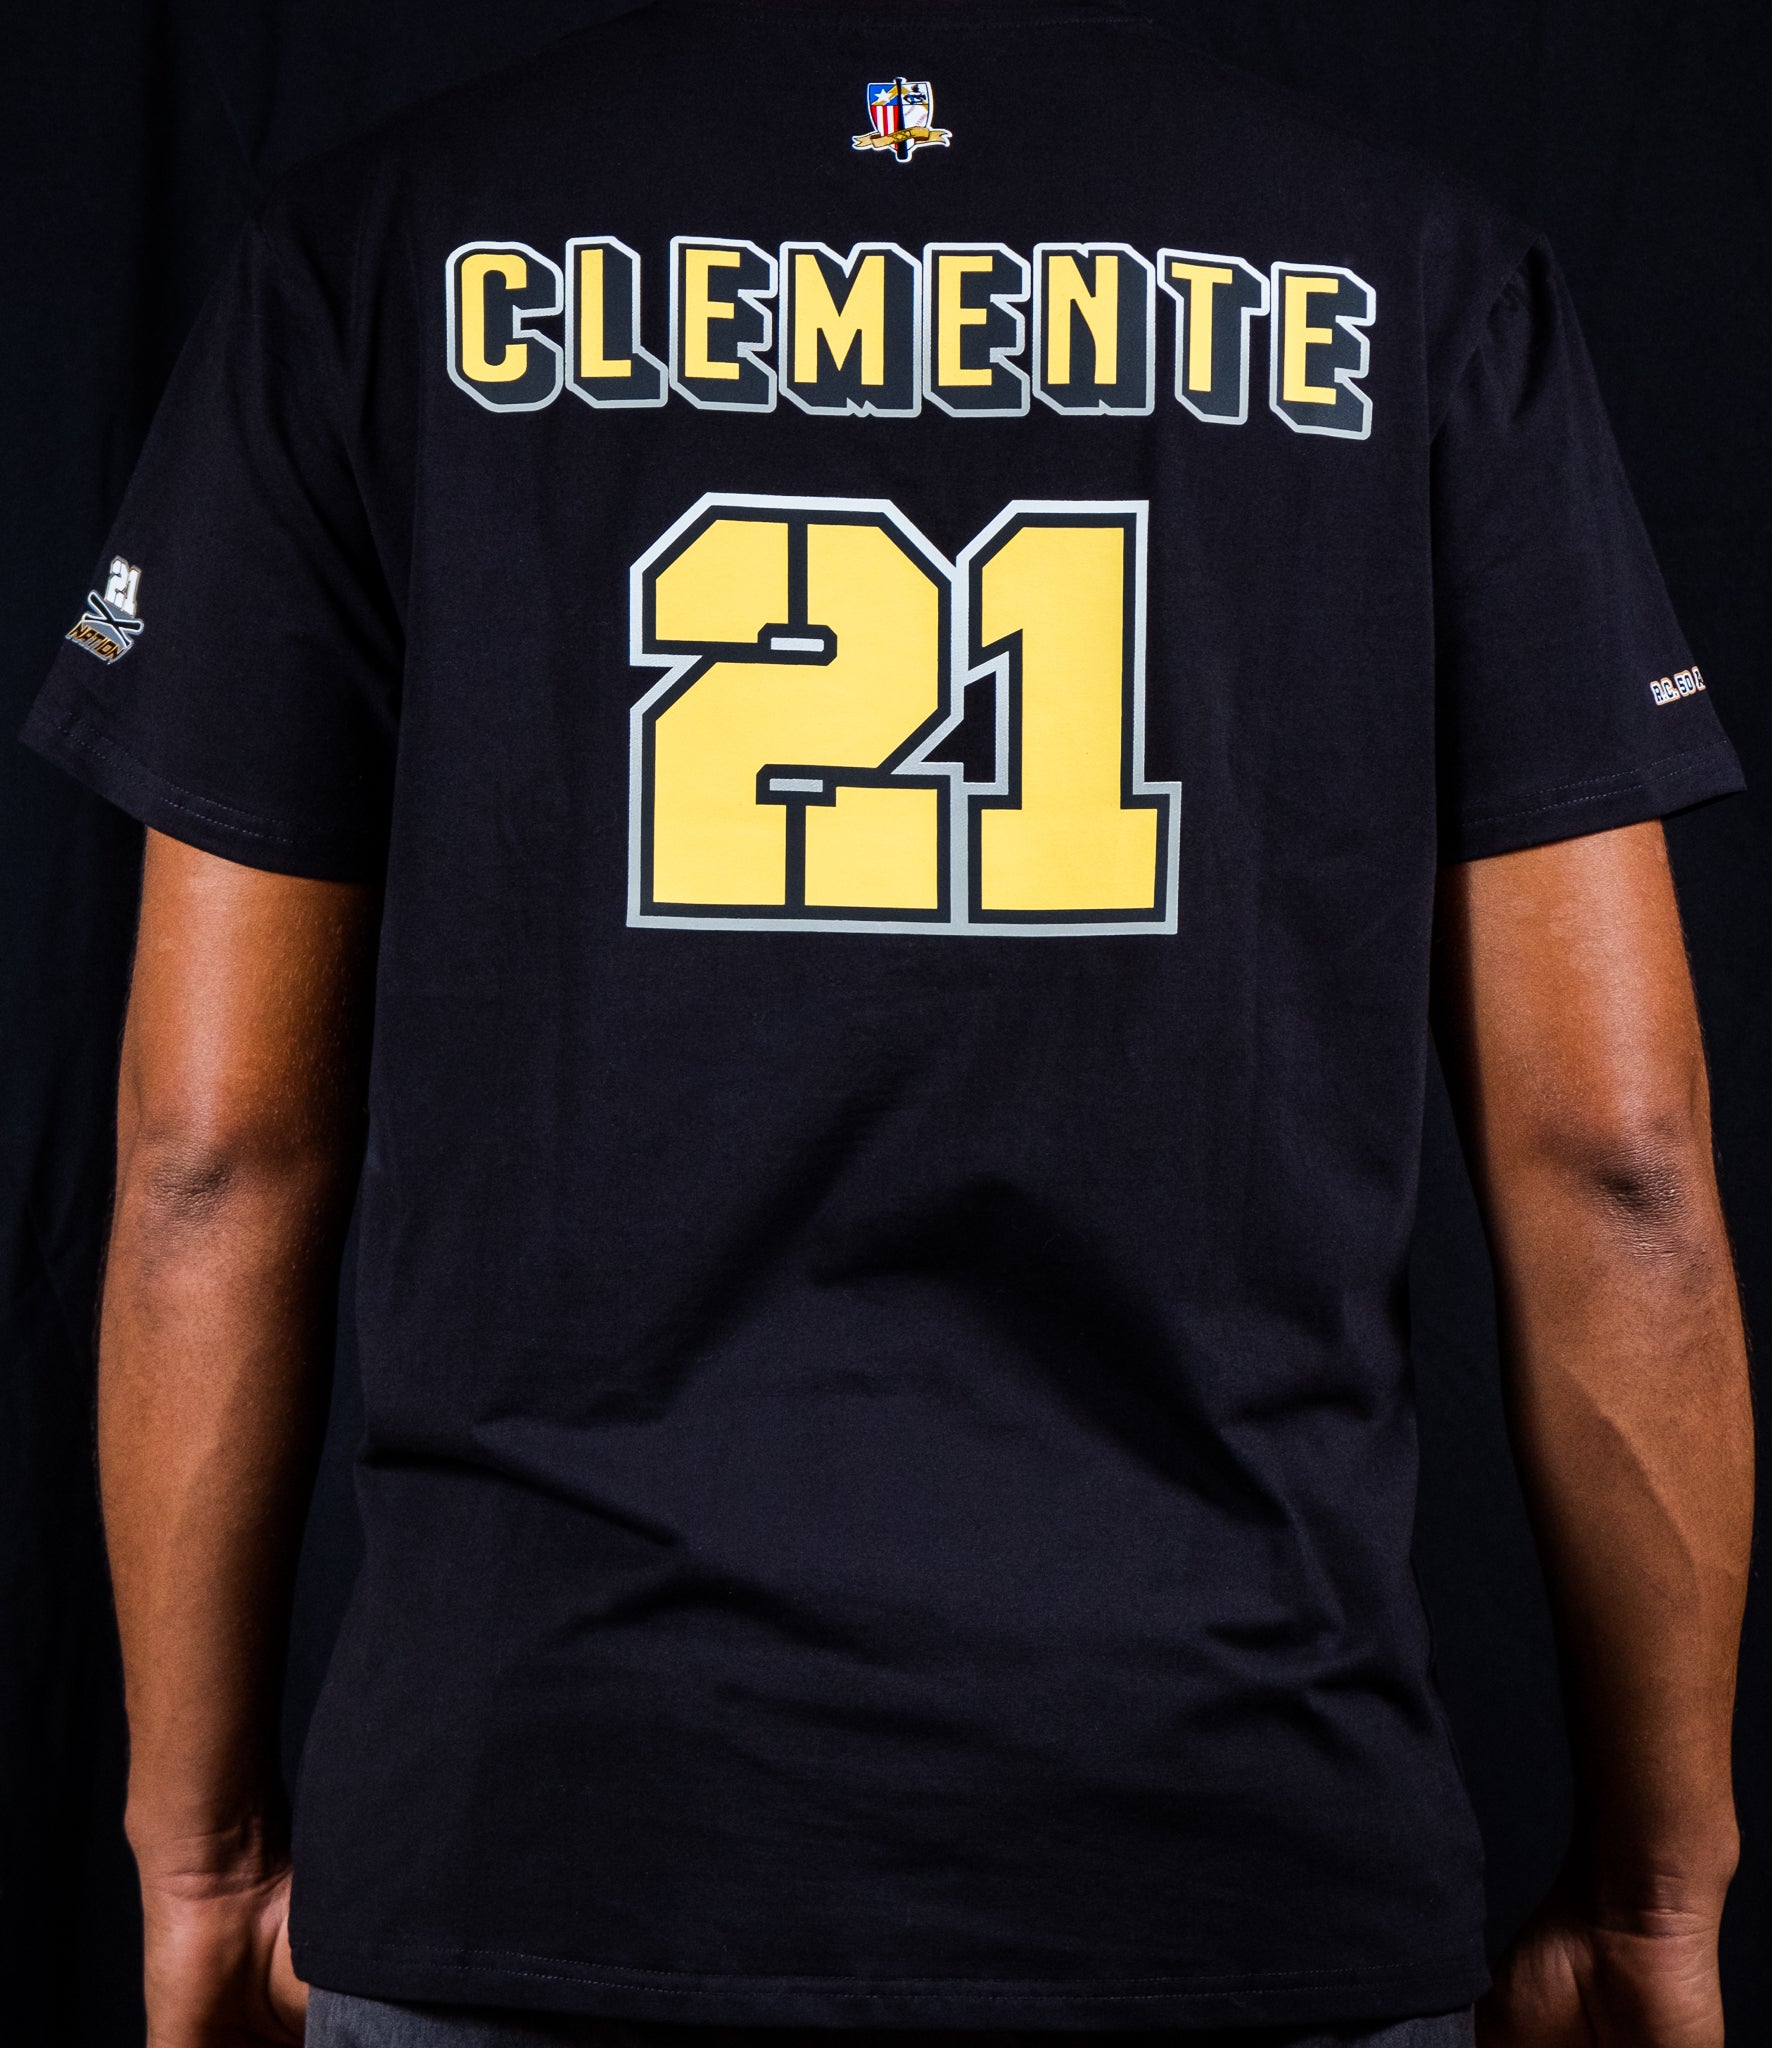 Roberto Clemente 50th Anniversary | T-Shirt 1